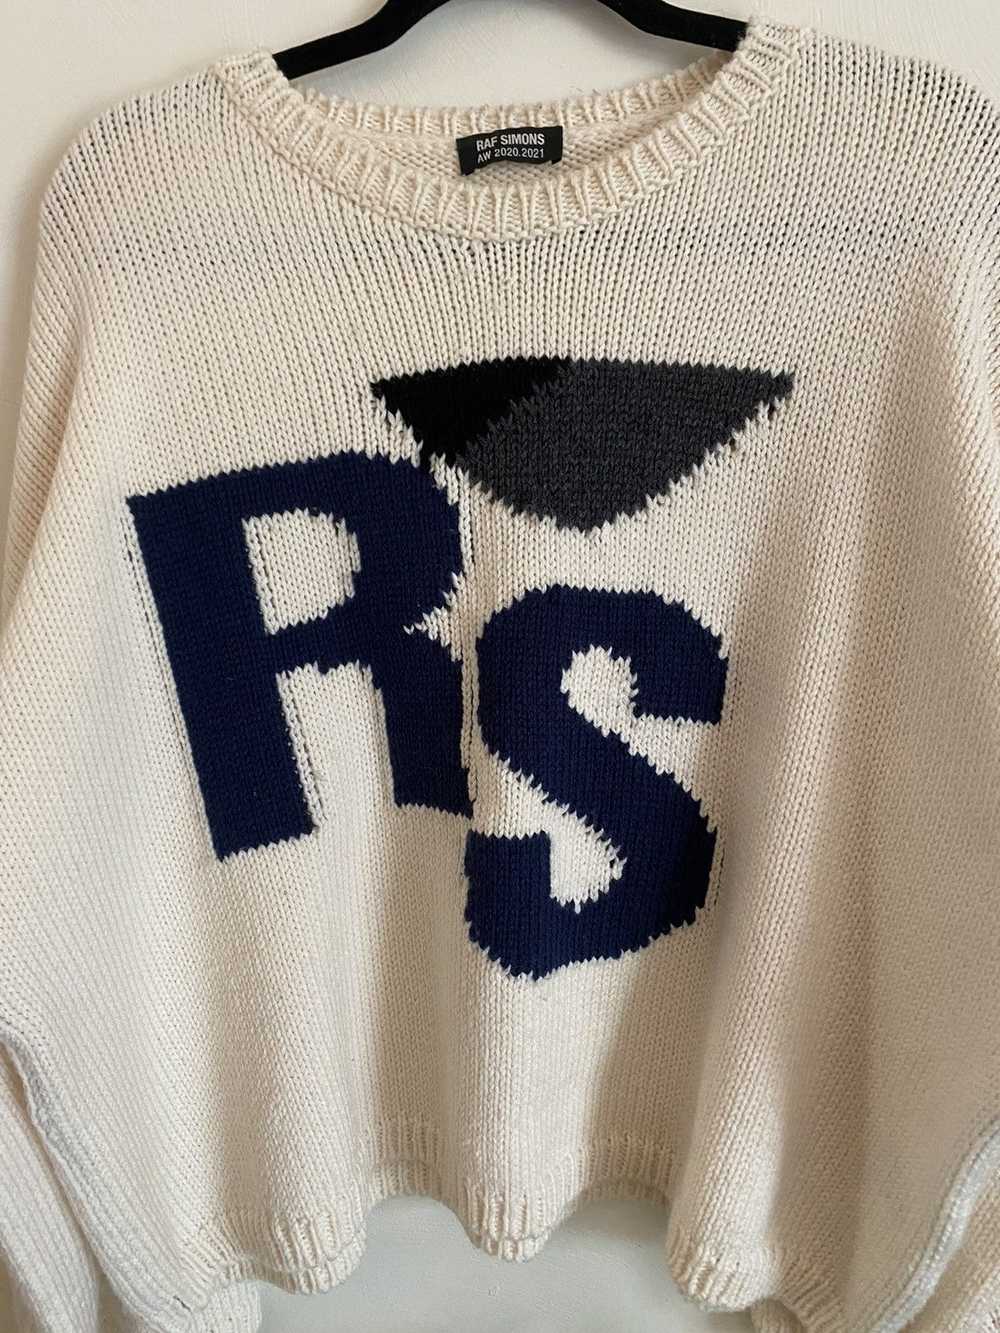 Raf Simons *Grail* RAF Simons Sweater - image 2